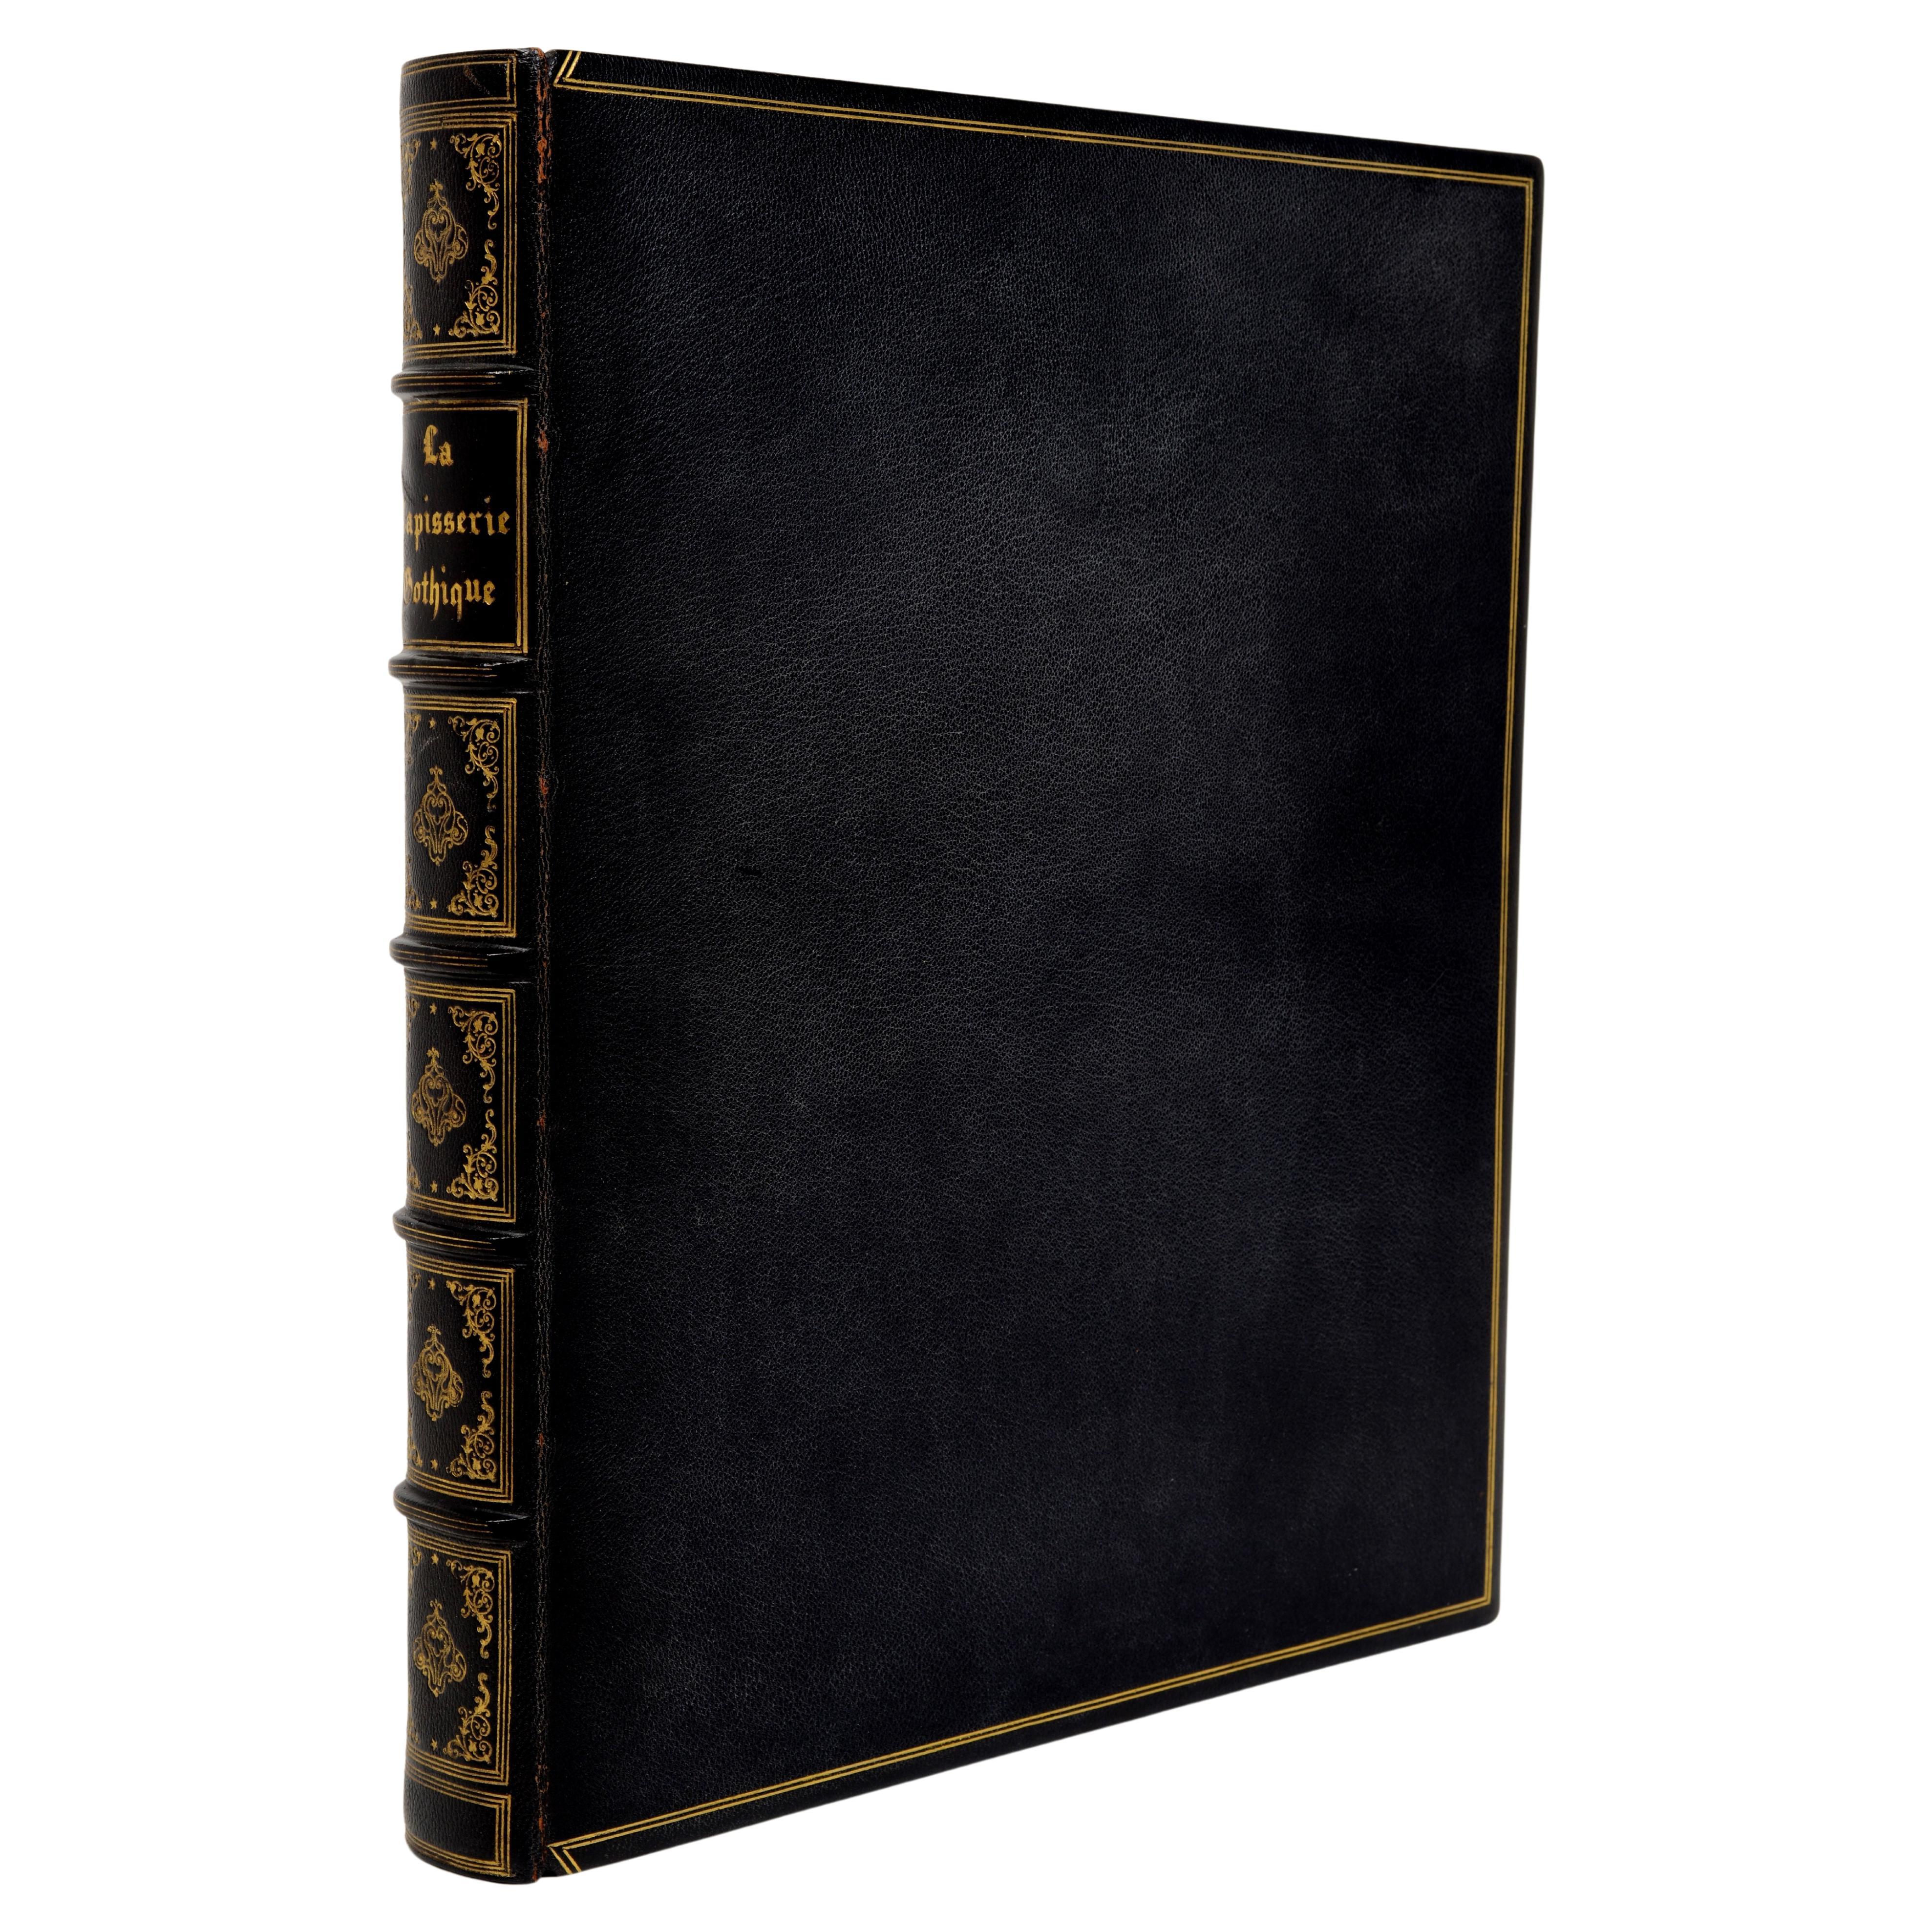 La Tapisserie Gothique de Goeblins, 1ère édition, reliée en cuir, copie de présentation 